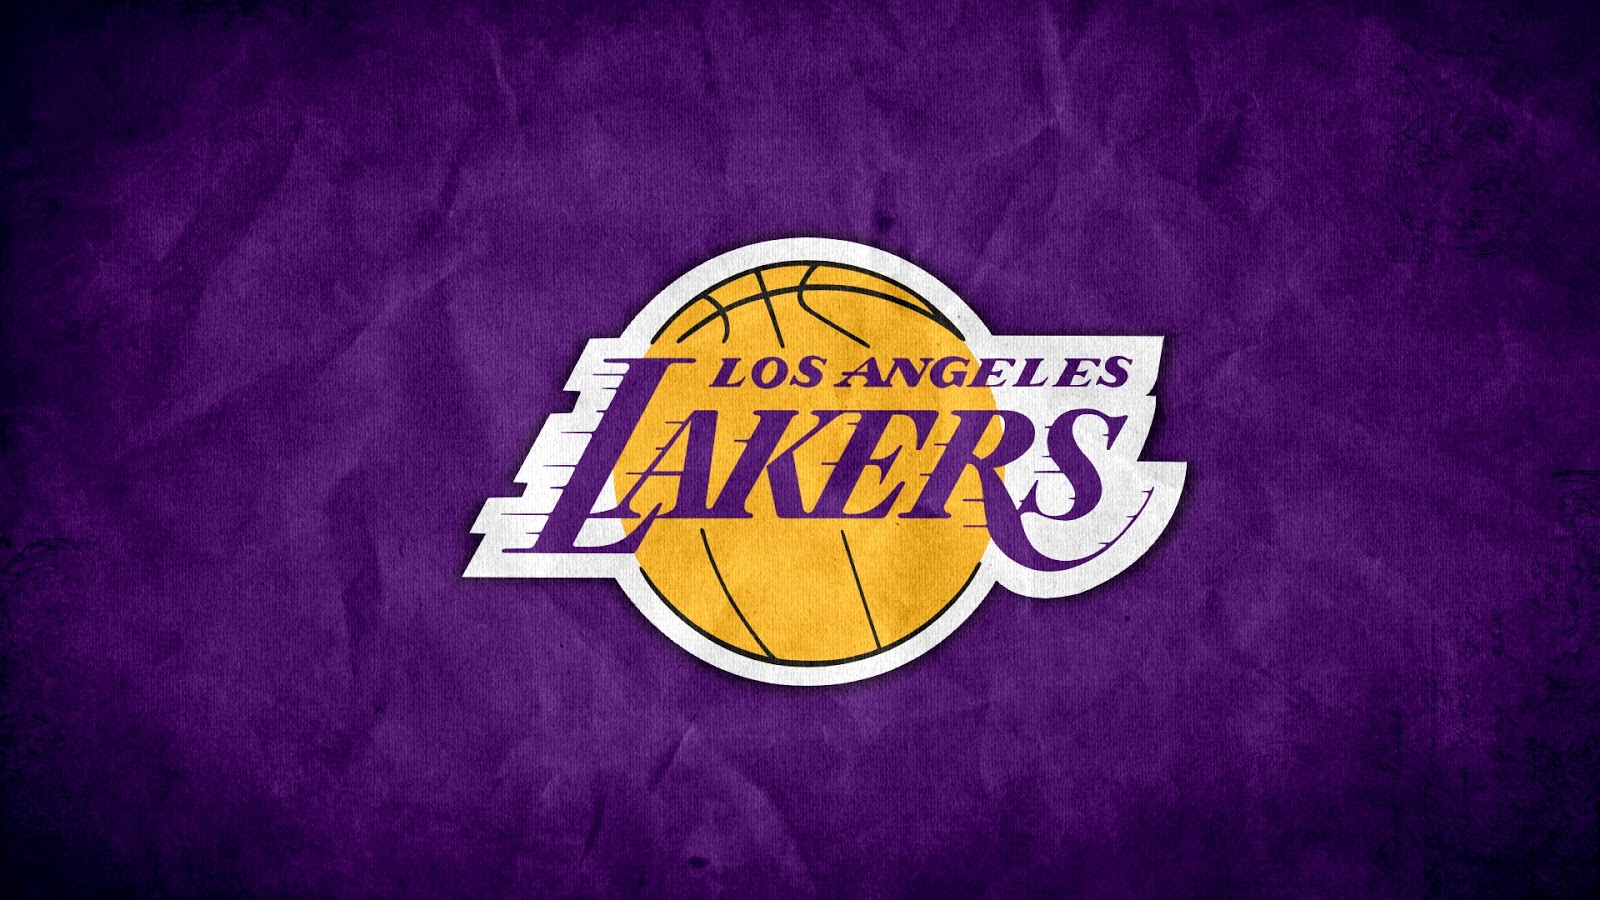 Lakers Images Background - WallpaperSafari